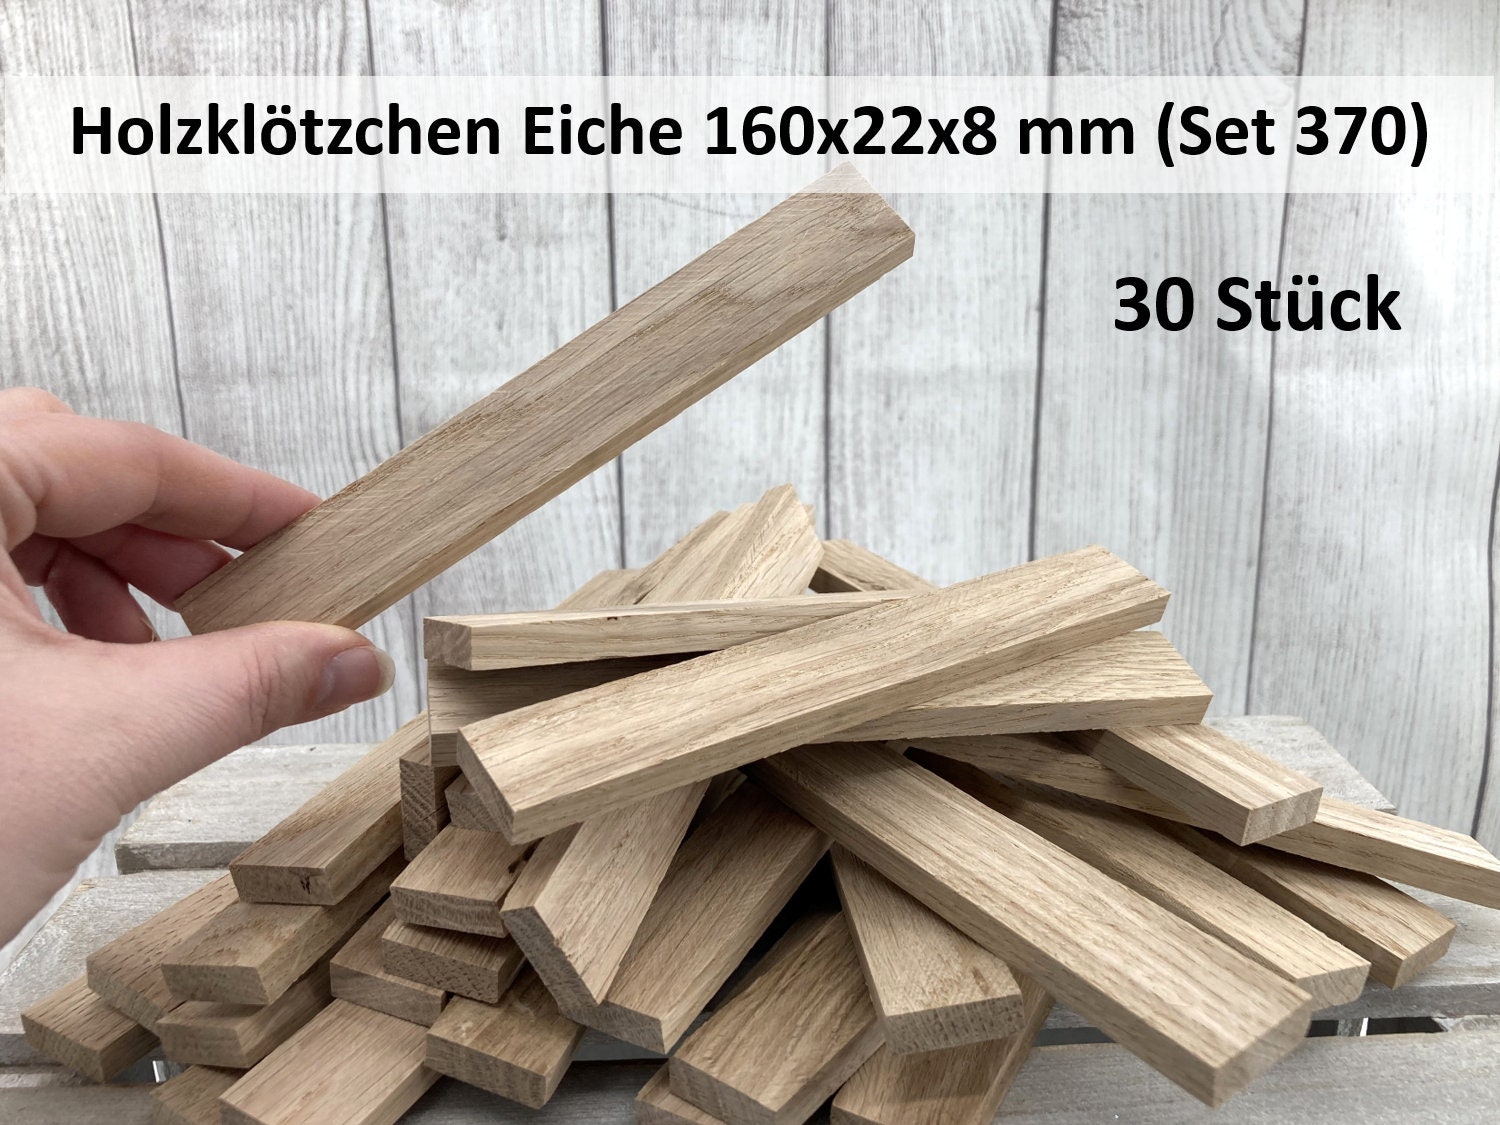 Wooden sticks - .de